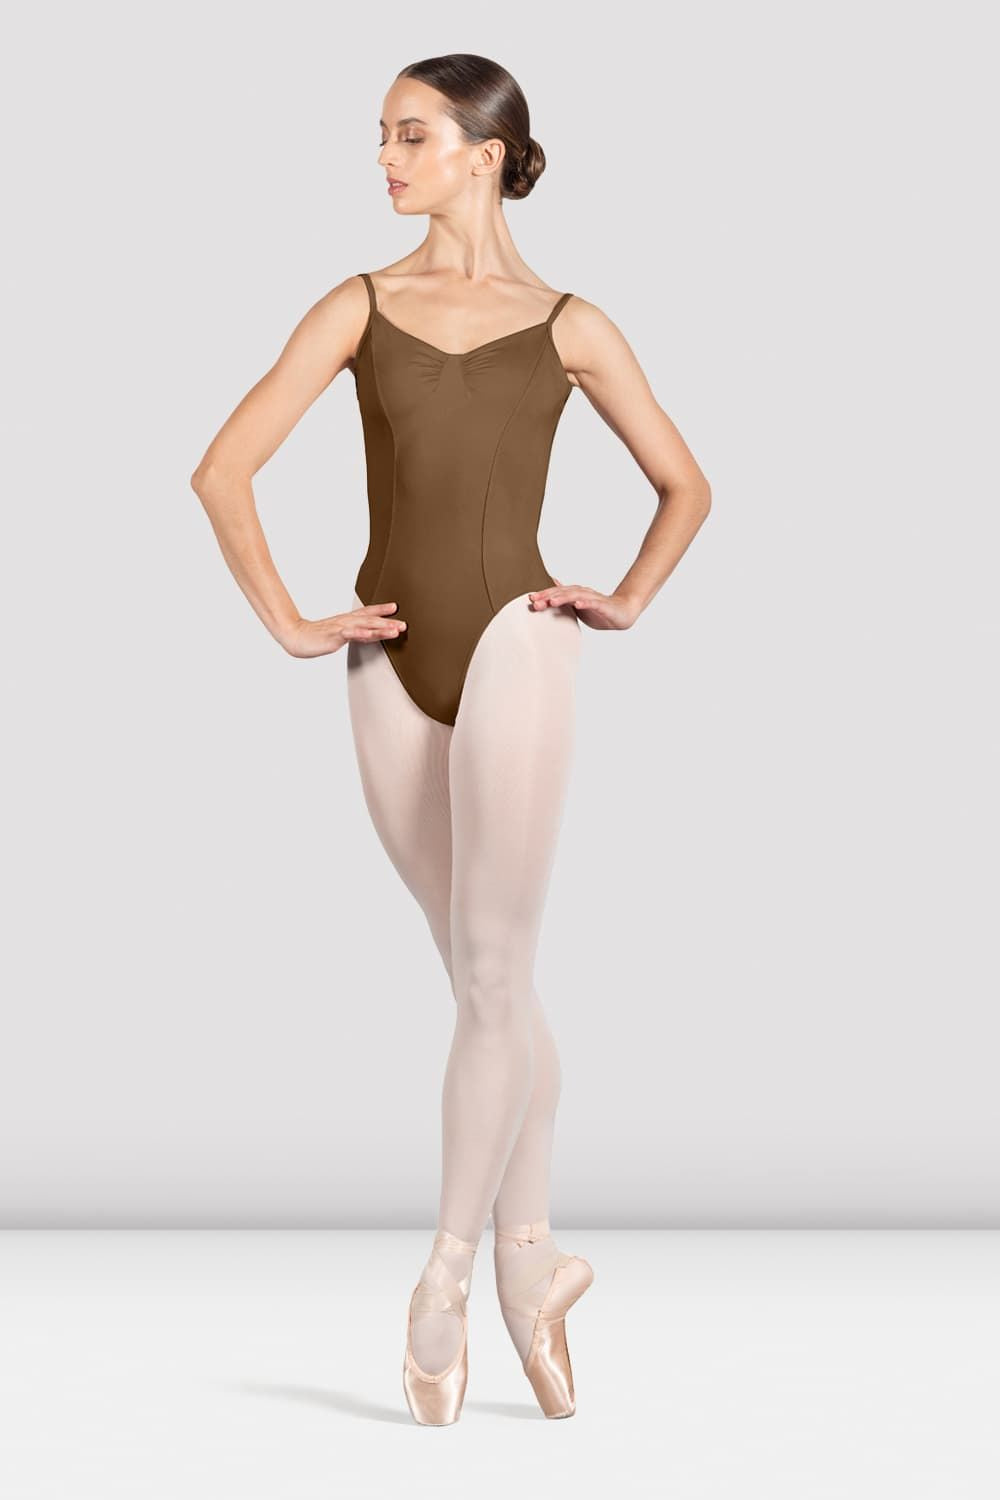 Bloch Ella Camisole Leotard, Classic Ballet Leotard - Dance World